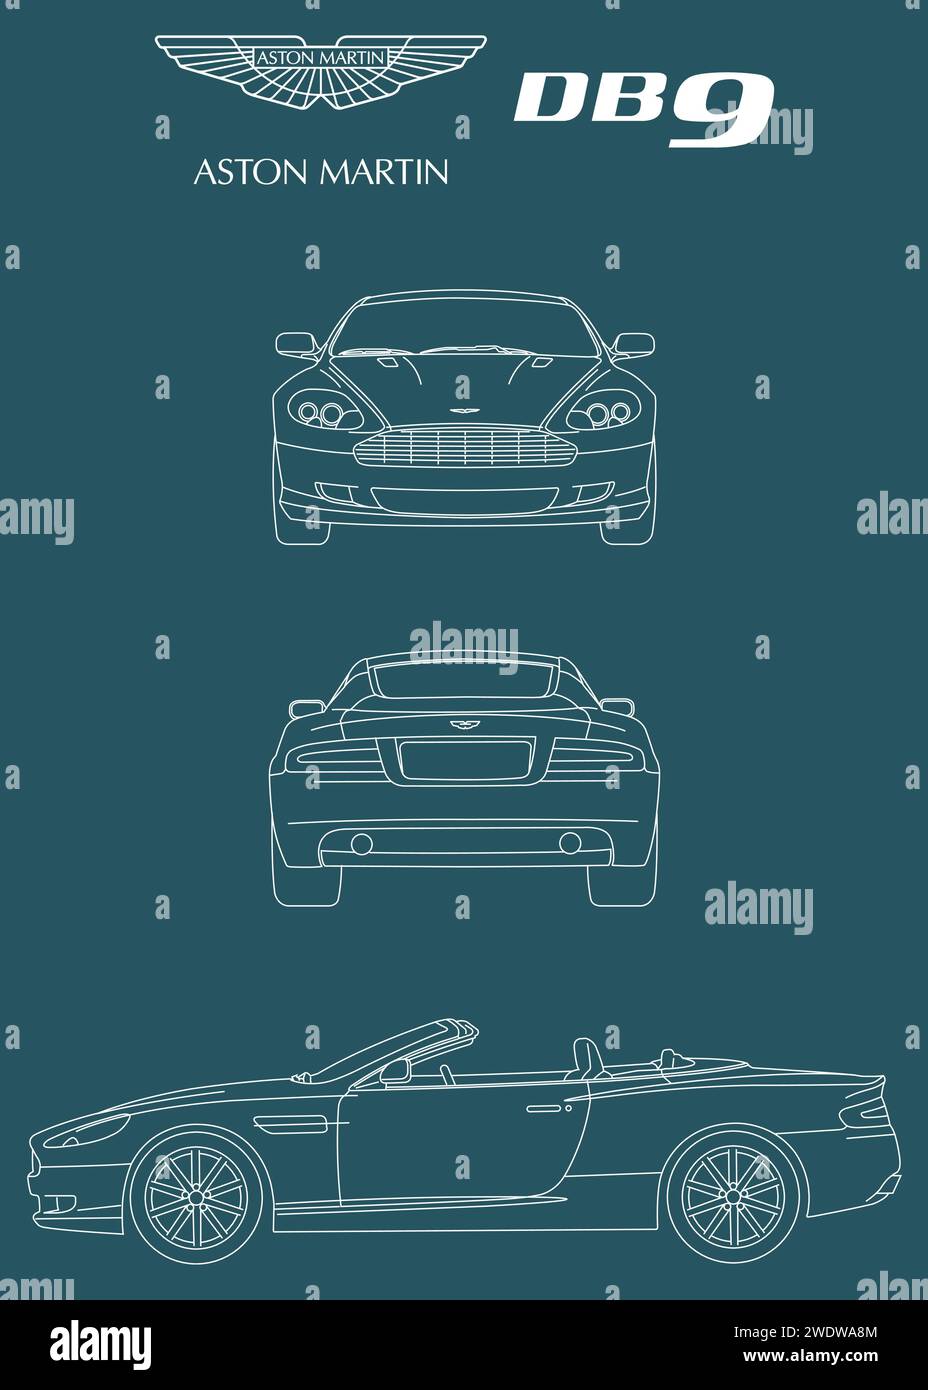 2005 progetto per auto Aston Martin DB9 Illustrazione Vettoriale